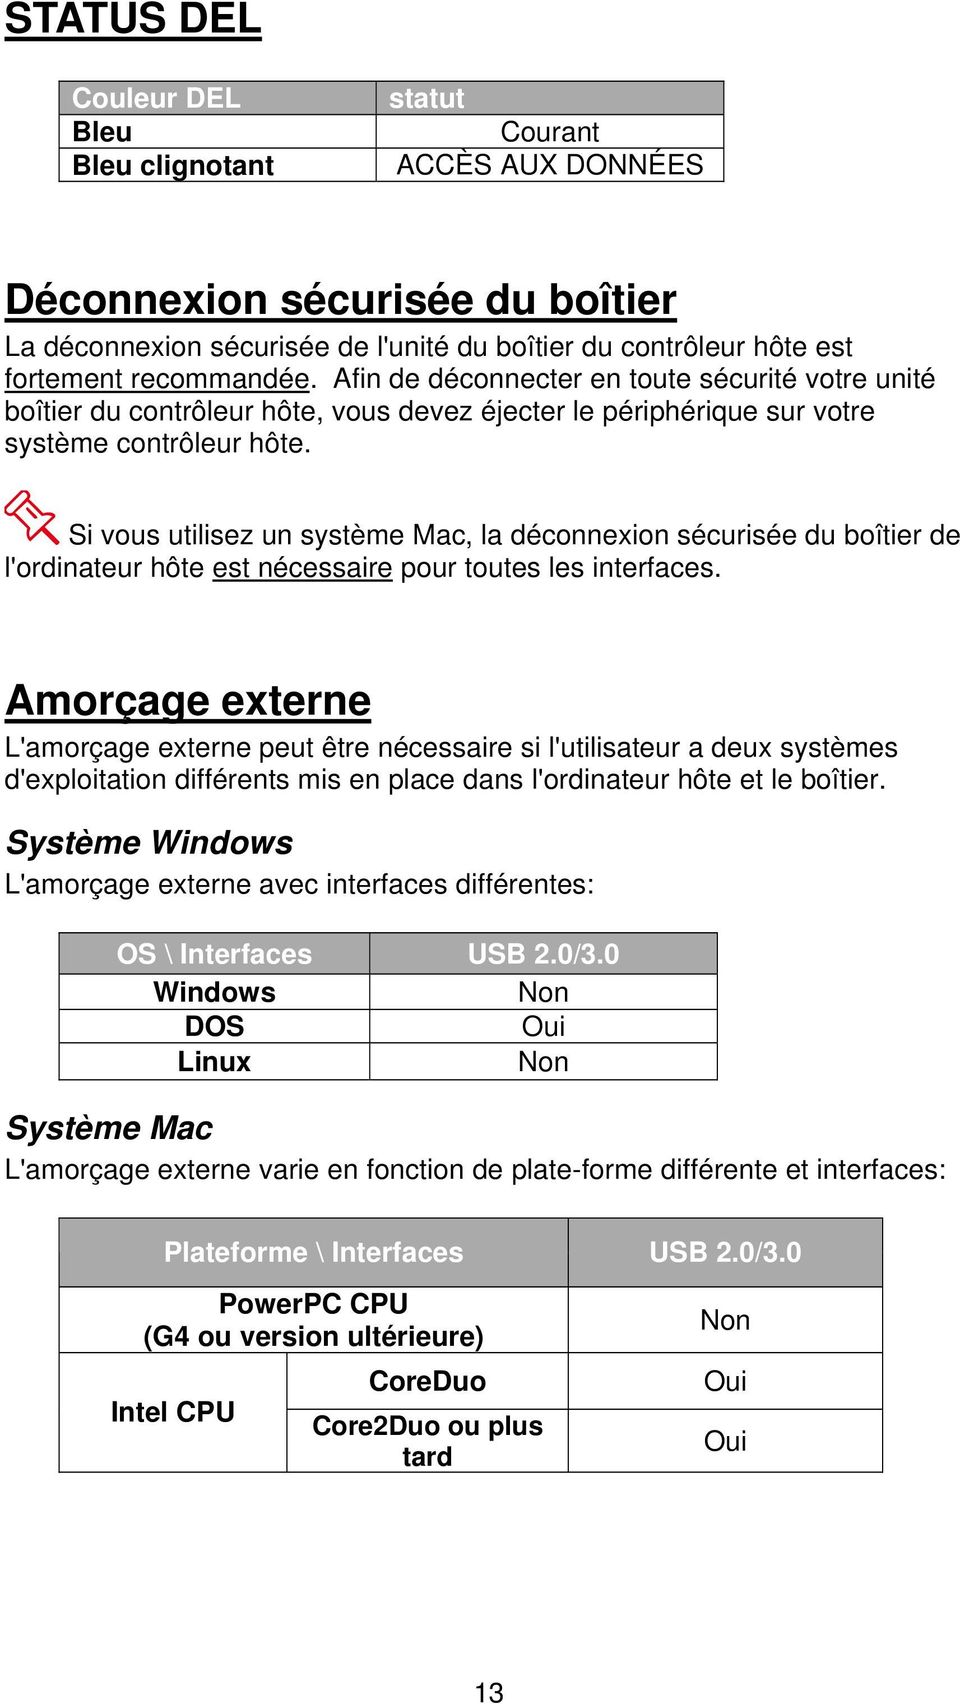 Si vous utilisez un système Mac, la déconnexion sécurisée du boîtier de l'ordinateur hôte est nécessaire pour toutes les interfaces.